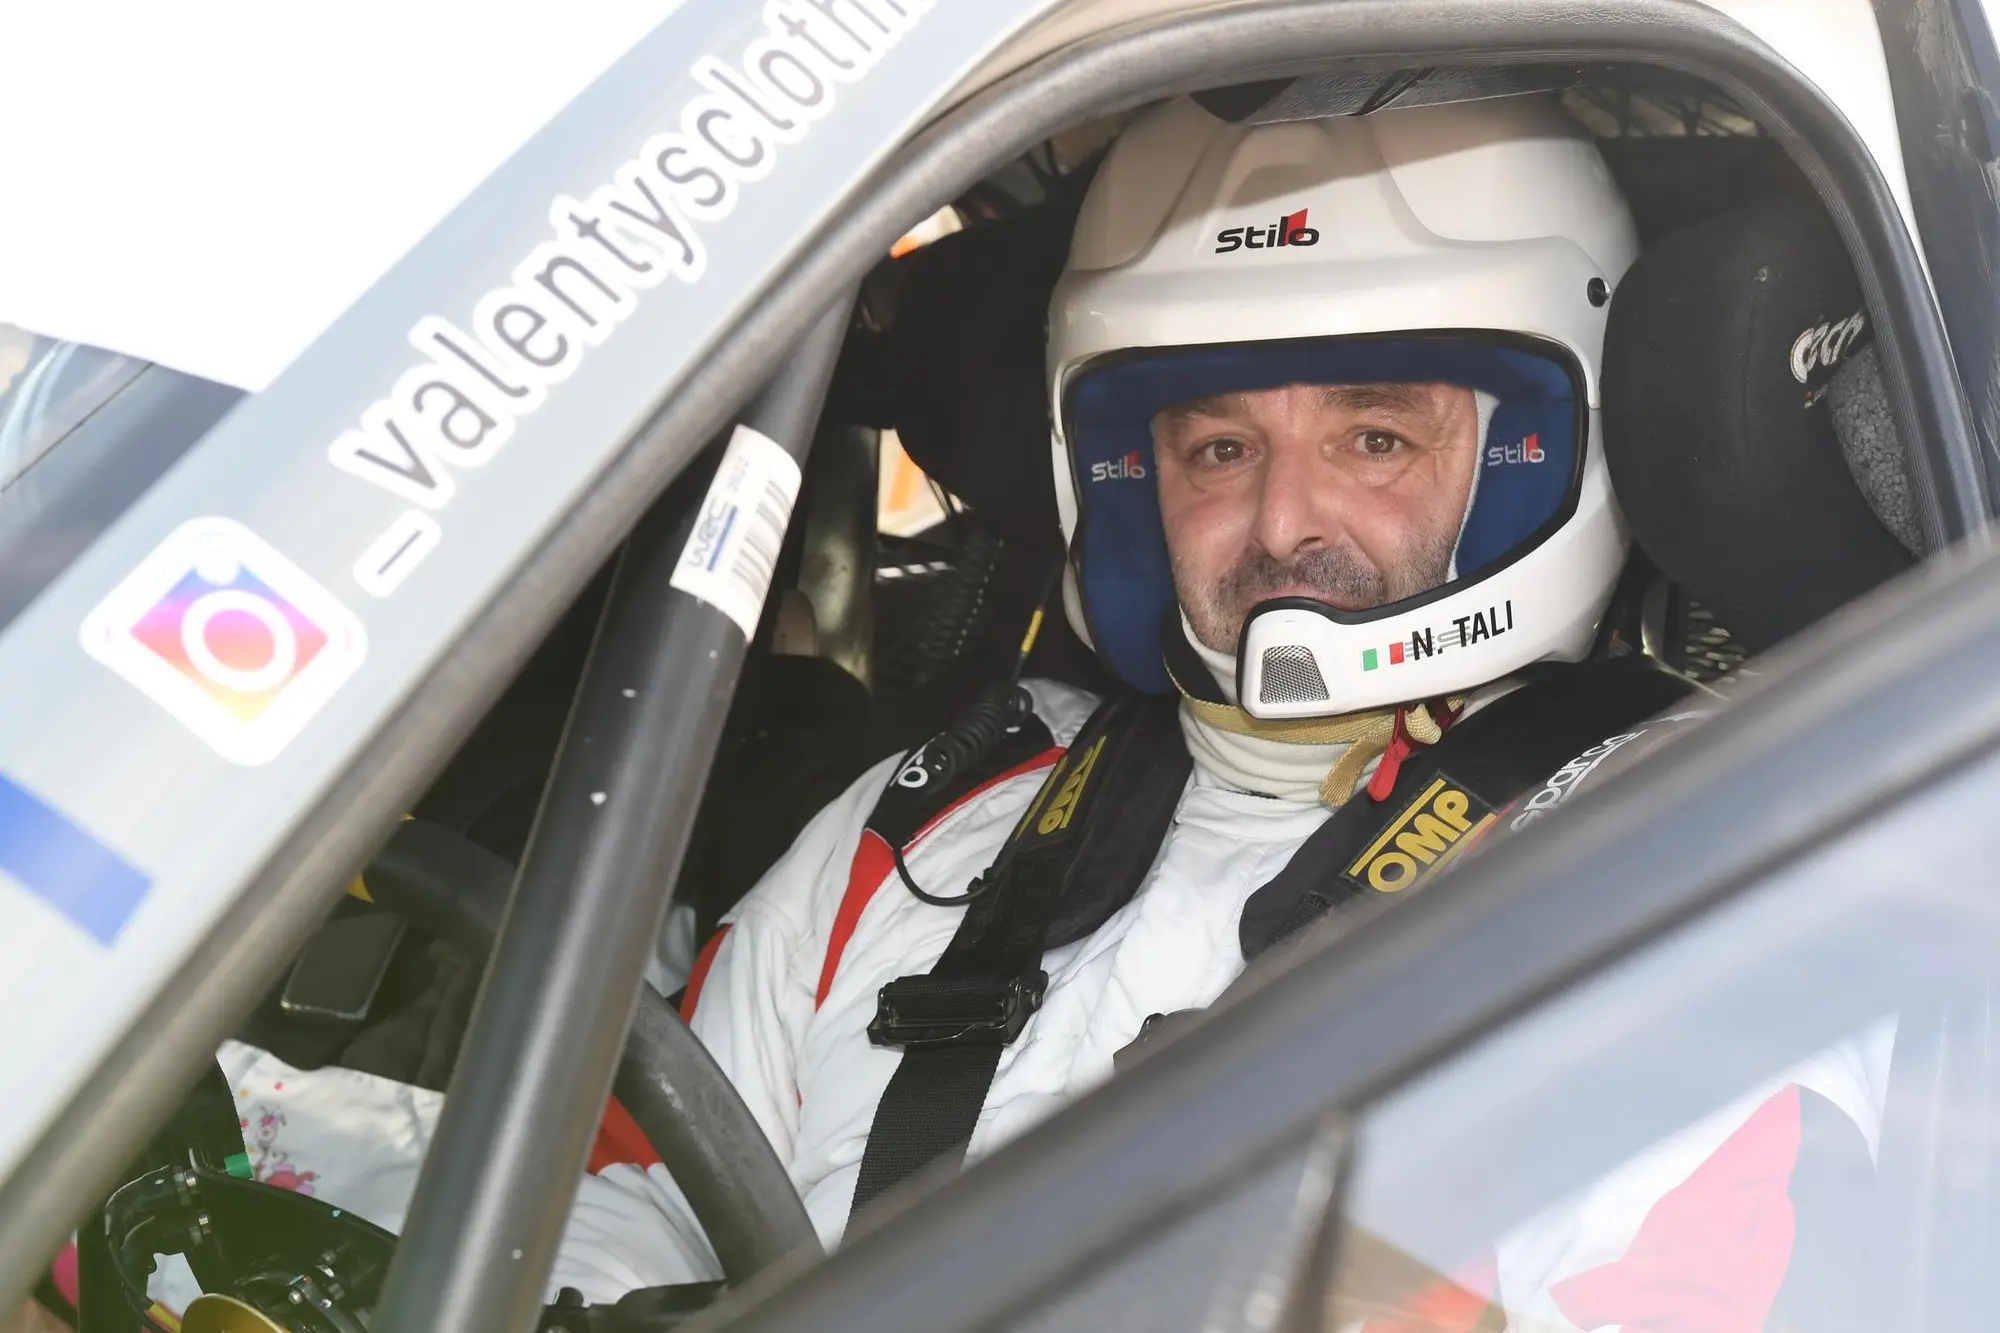 Il pilota Nicola Tali al Rally del Vermentino 2022 (foto Gianluca Laconi)